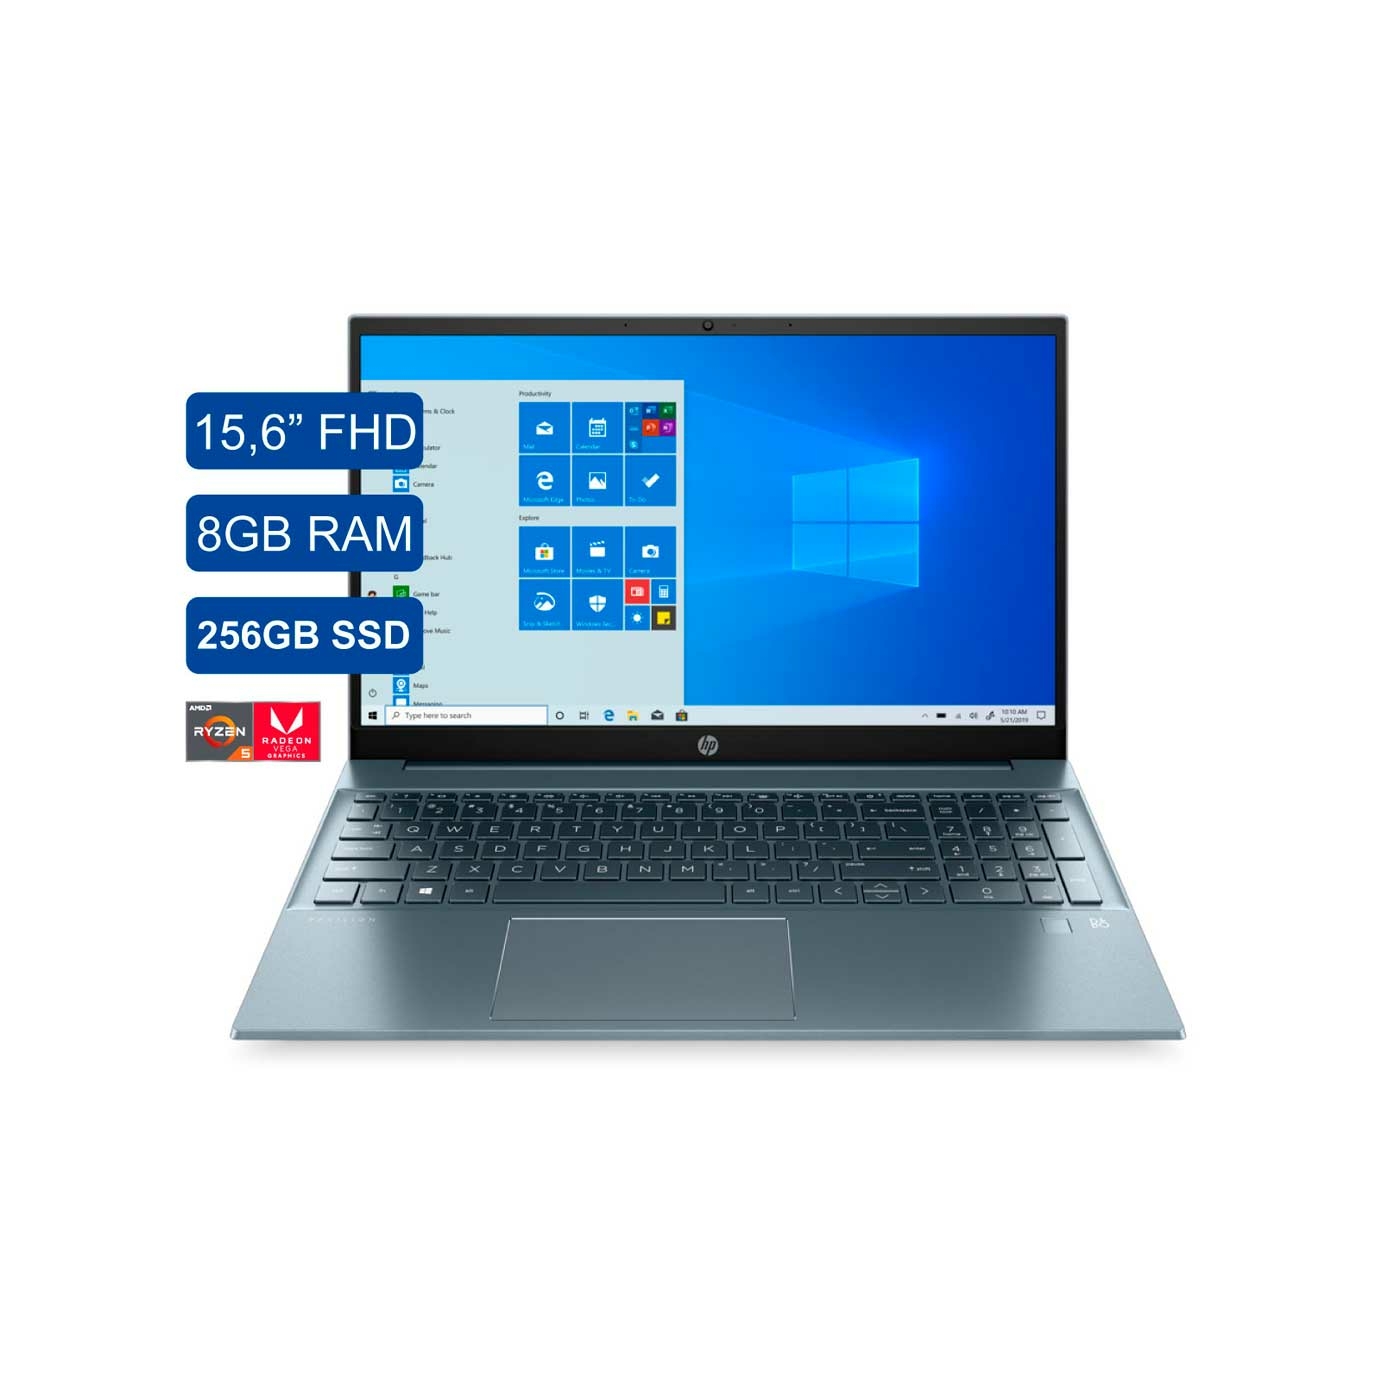 Computador Portátil HP 15,6" Pulgadas eh0008 - AMD Ryzen 5 - RAM 8GB - Disco SSD 256 GB - Azul